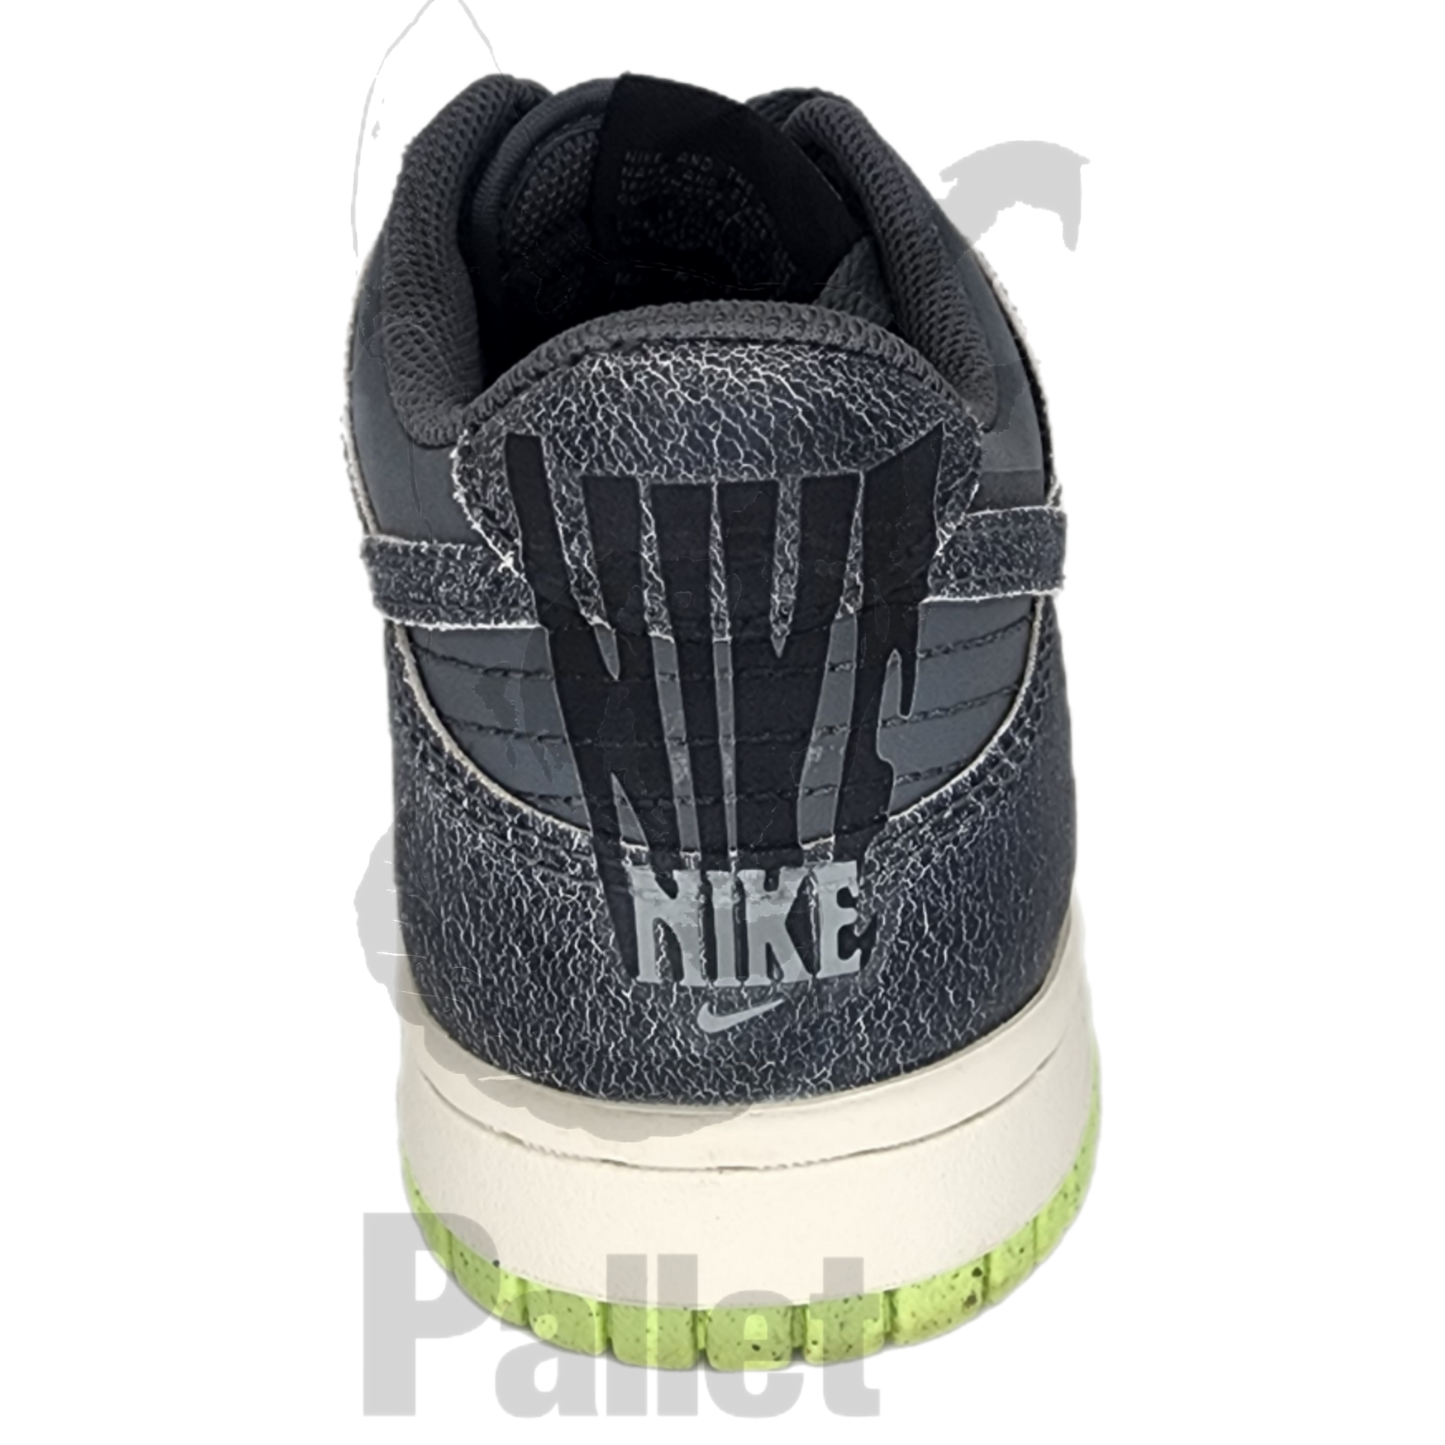 Nike - "Dunk Low Phantom" - Size 6